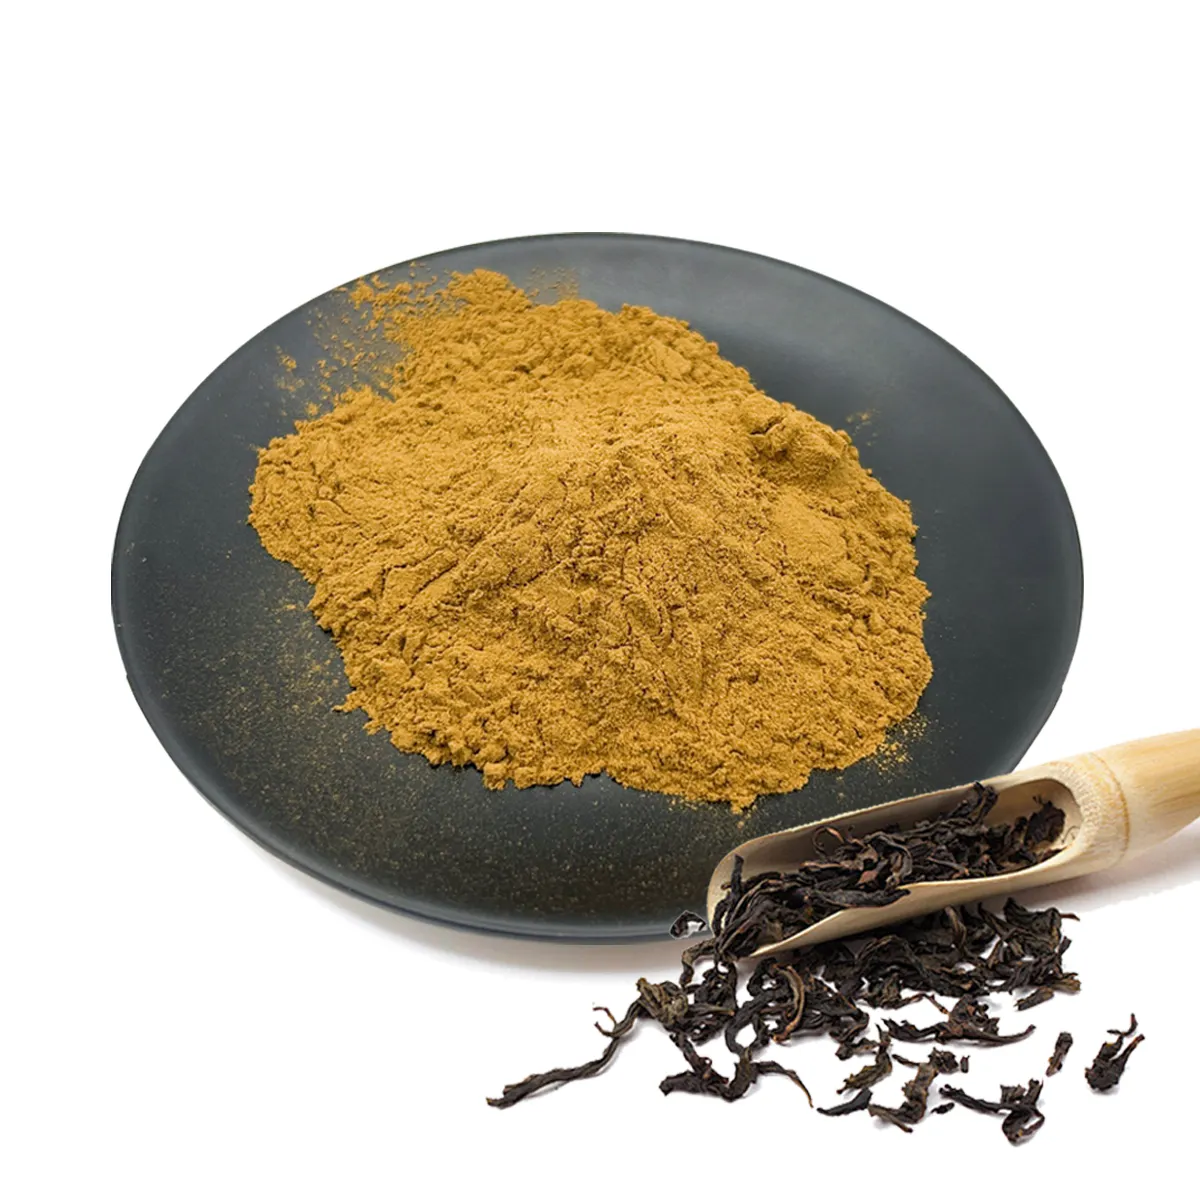 Originale per uso alimentare naturale estratto di tè nero in polvere fornitori solubile in acqua di tè nero istantaneo in polvere per la salute degli alimenti per il latte